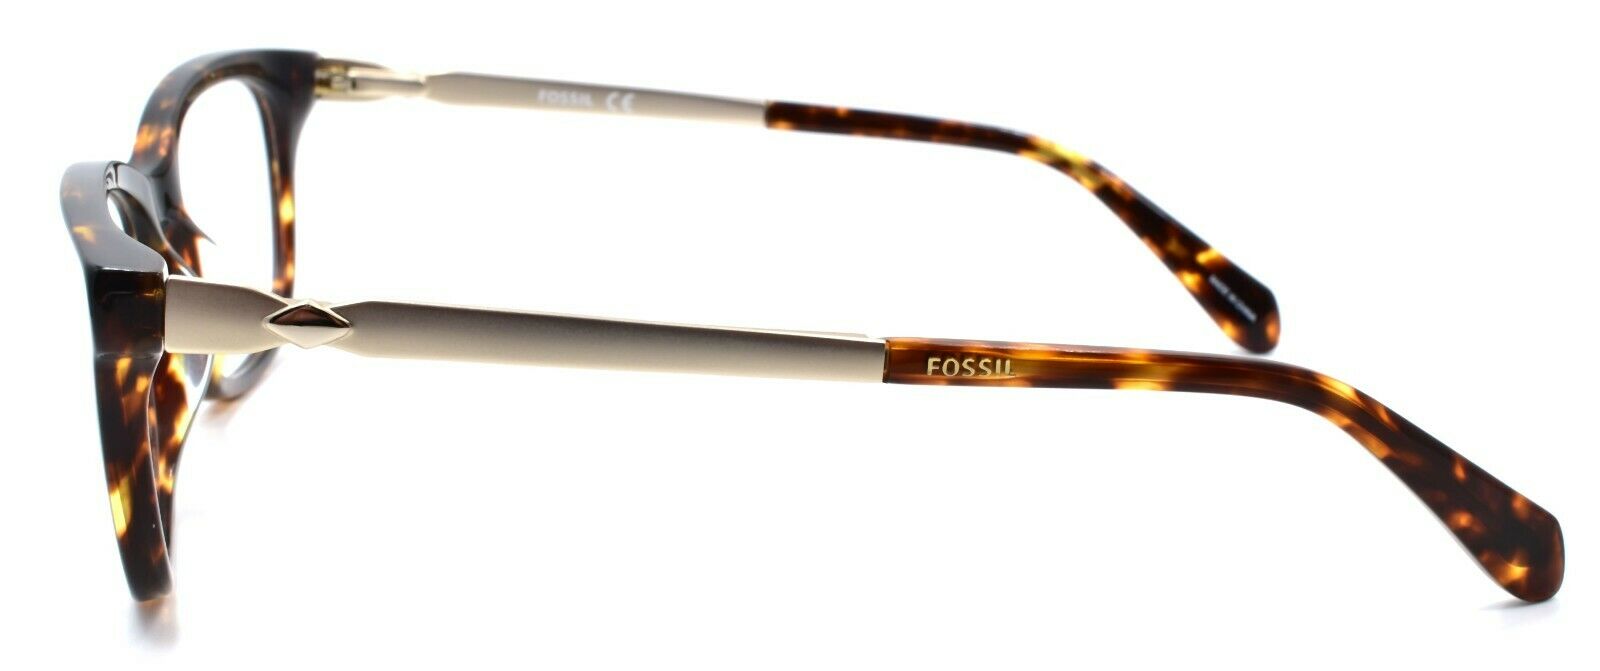 3-Fossil FOS 7025 086 Women's Eyeglasses Frames 50-15-140 Dark Havana-716736029221-IKSpecs